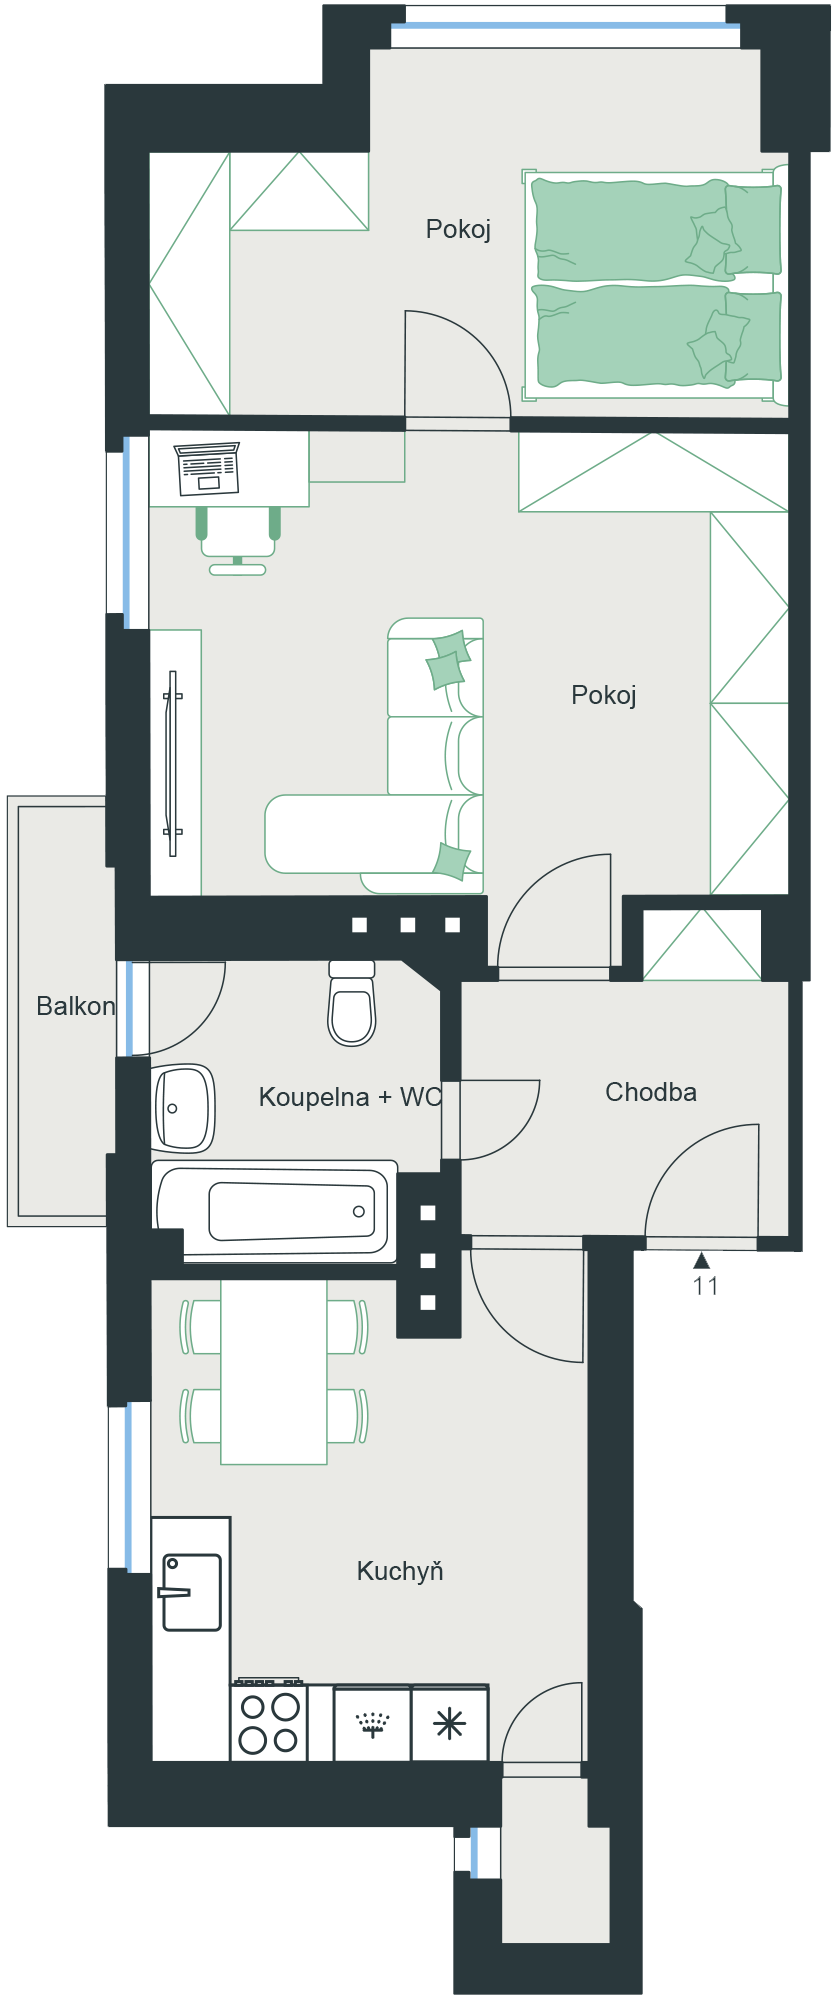 Bytová jednotka č. 11 o dispozici 2+1 a podlahové ploše 56,9 m² 2+1